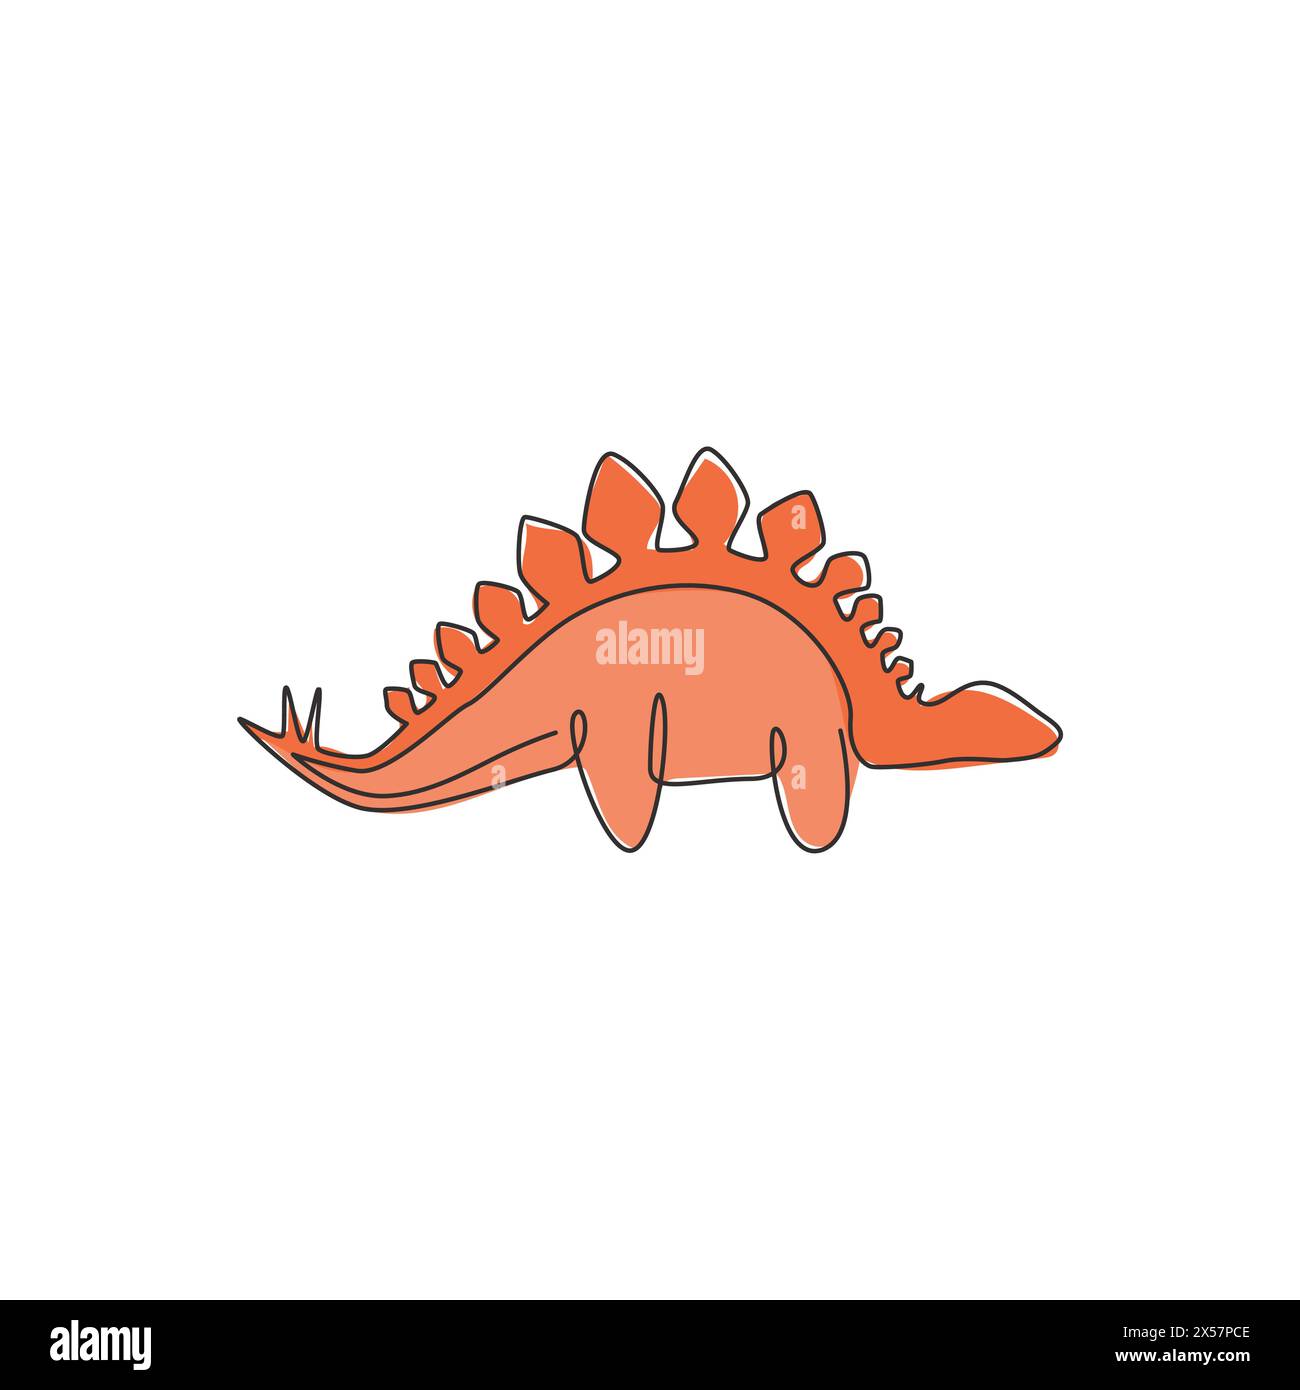 Un disegno continuo di dinosauri per l'identità del logo. Concetto di mascotte Stegosaurus per l'icona del museo preistorico. Moderno design a linea singola Illustrazione Vettoriale